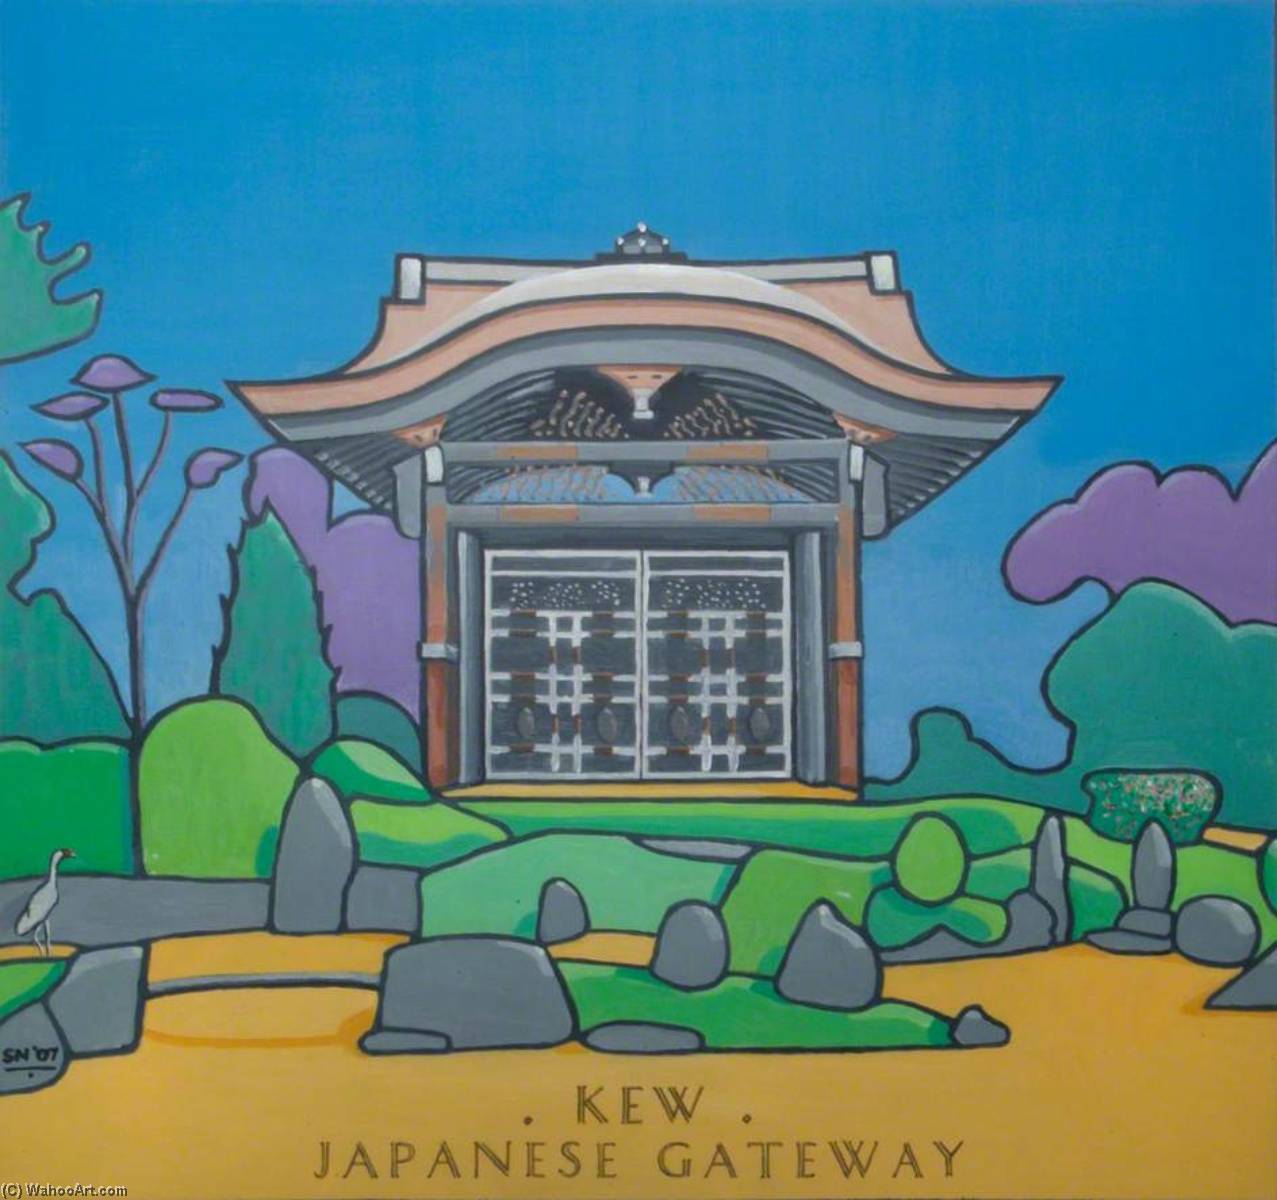 WikiOO.org - אנציקלופדיה לאמנויות יפות - ציור, יצירות אמנות Stephen Nicoll - Kew Icons Japanese Gateway